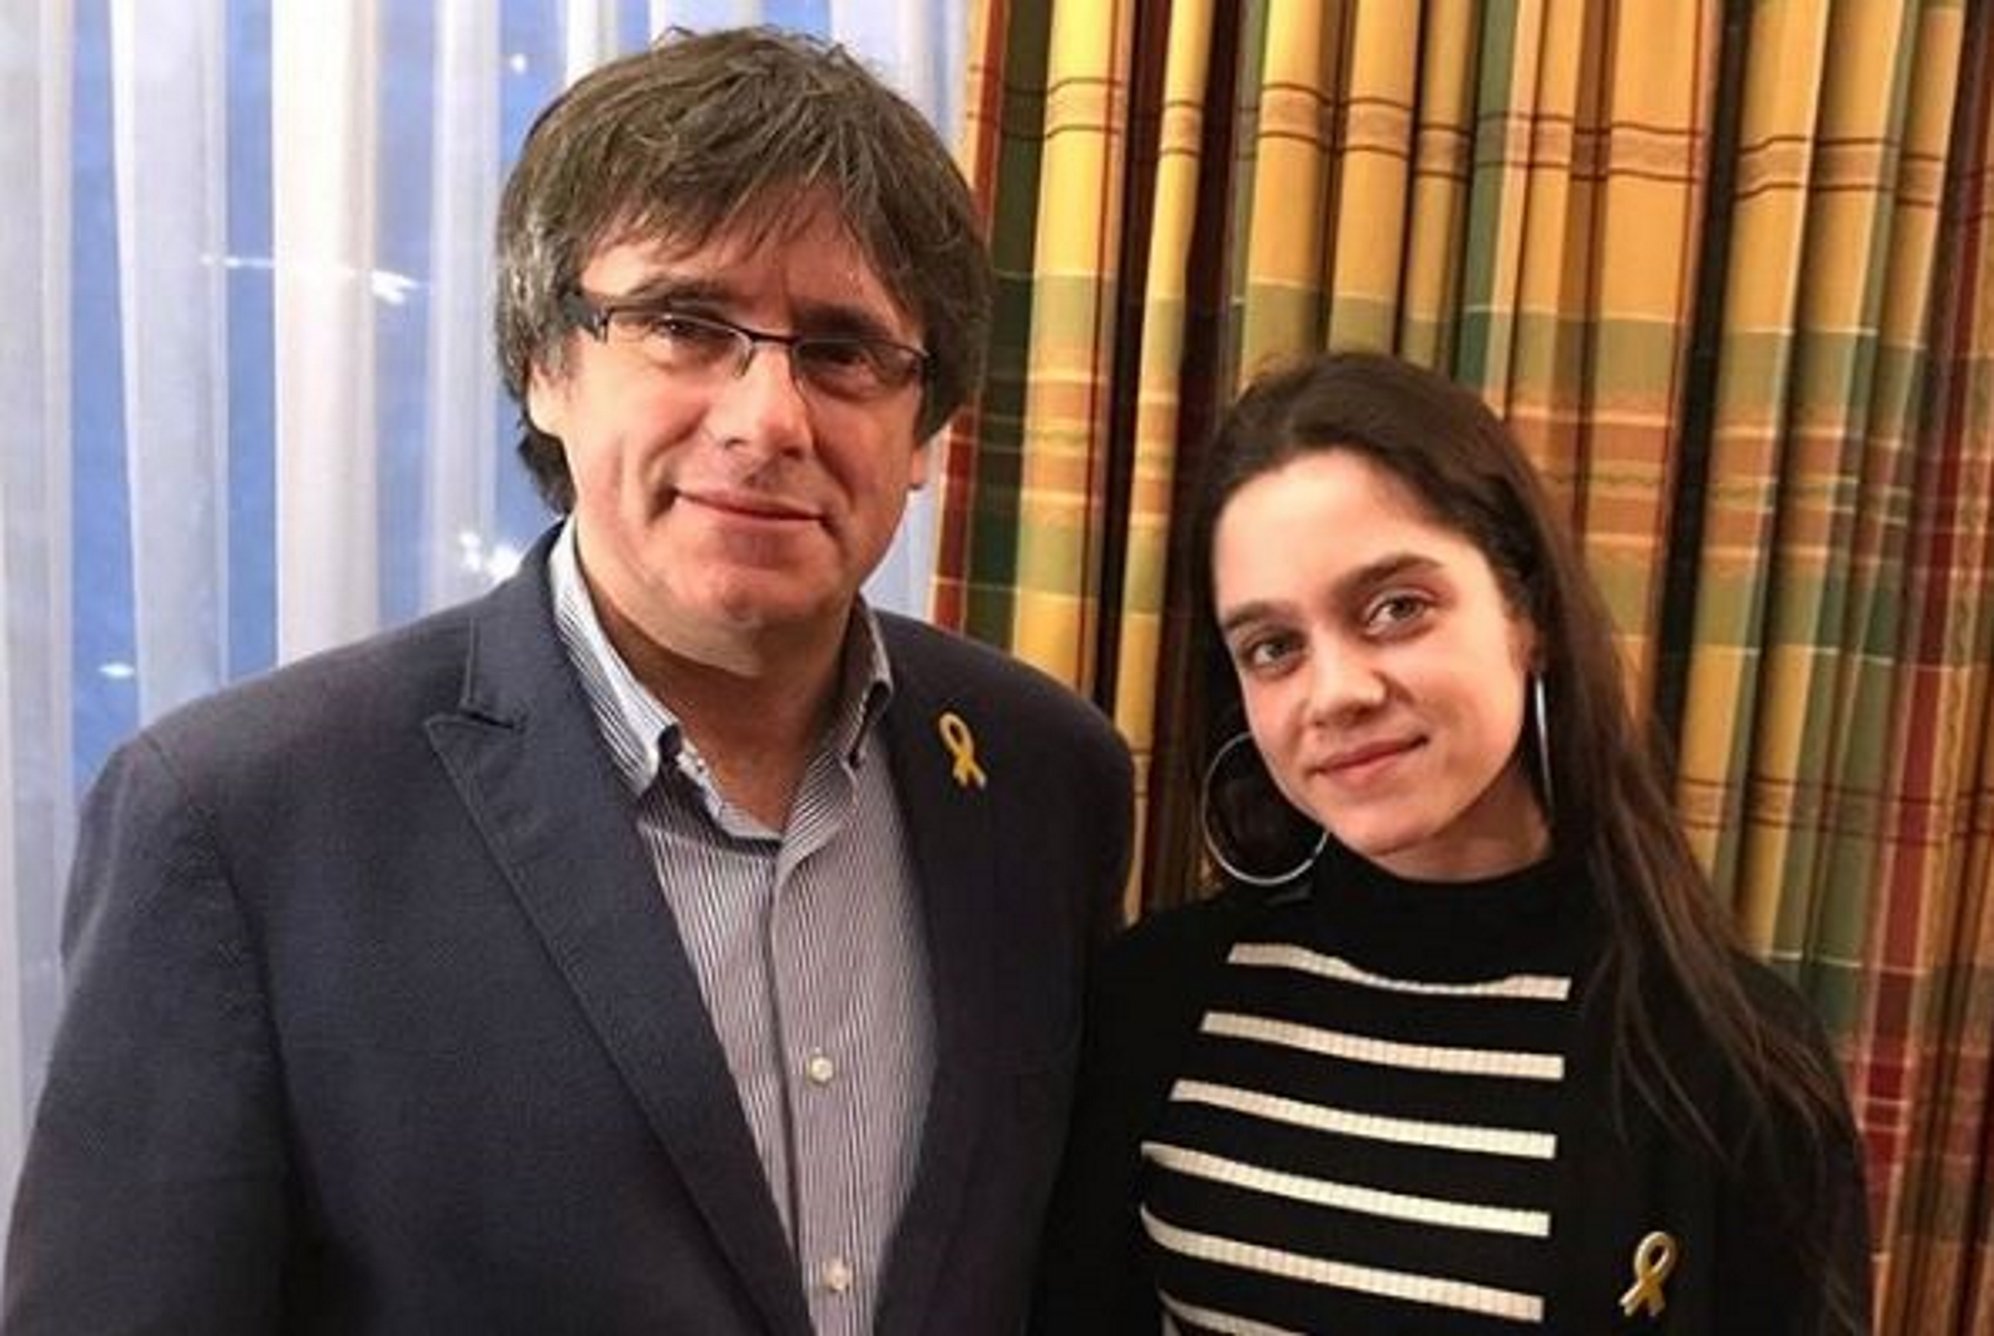 Una chica de 18 años ofrece su voto a Puigdemont